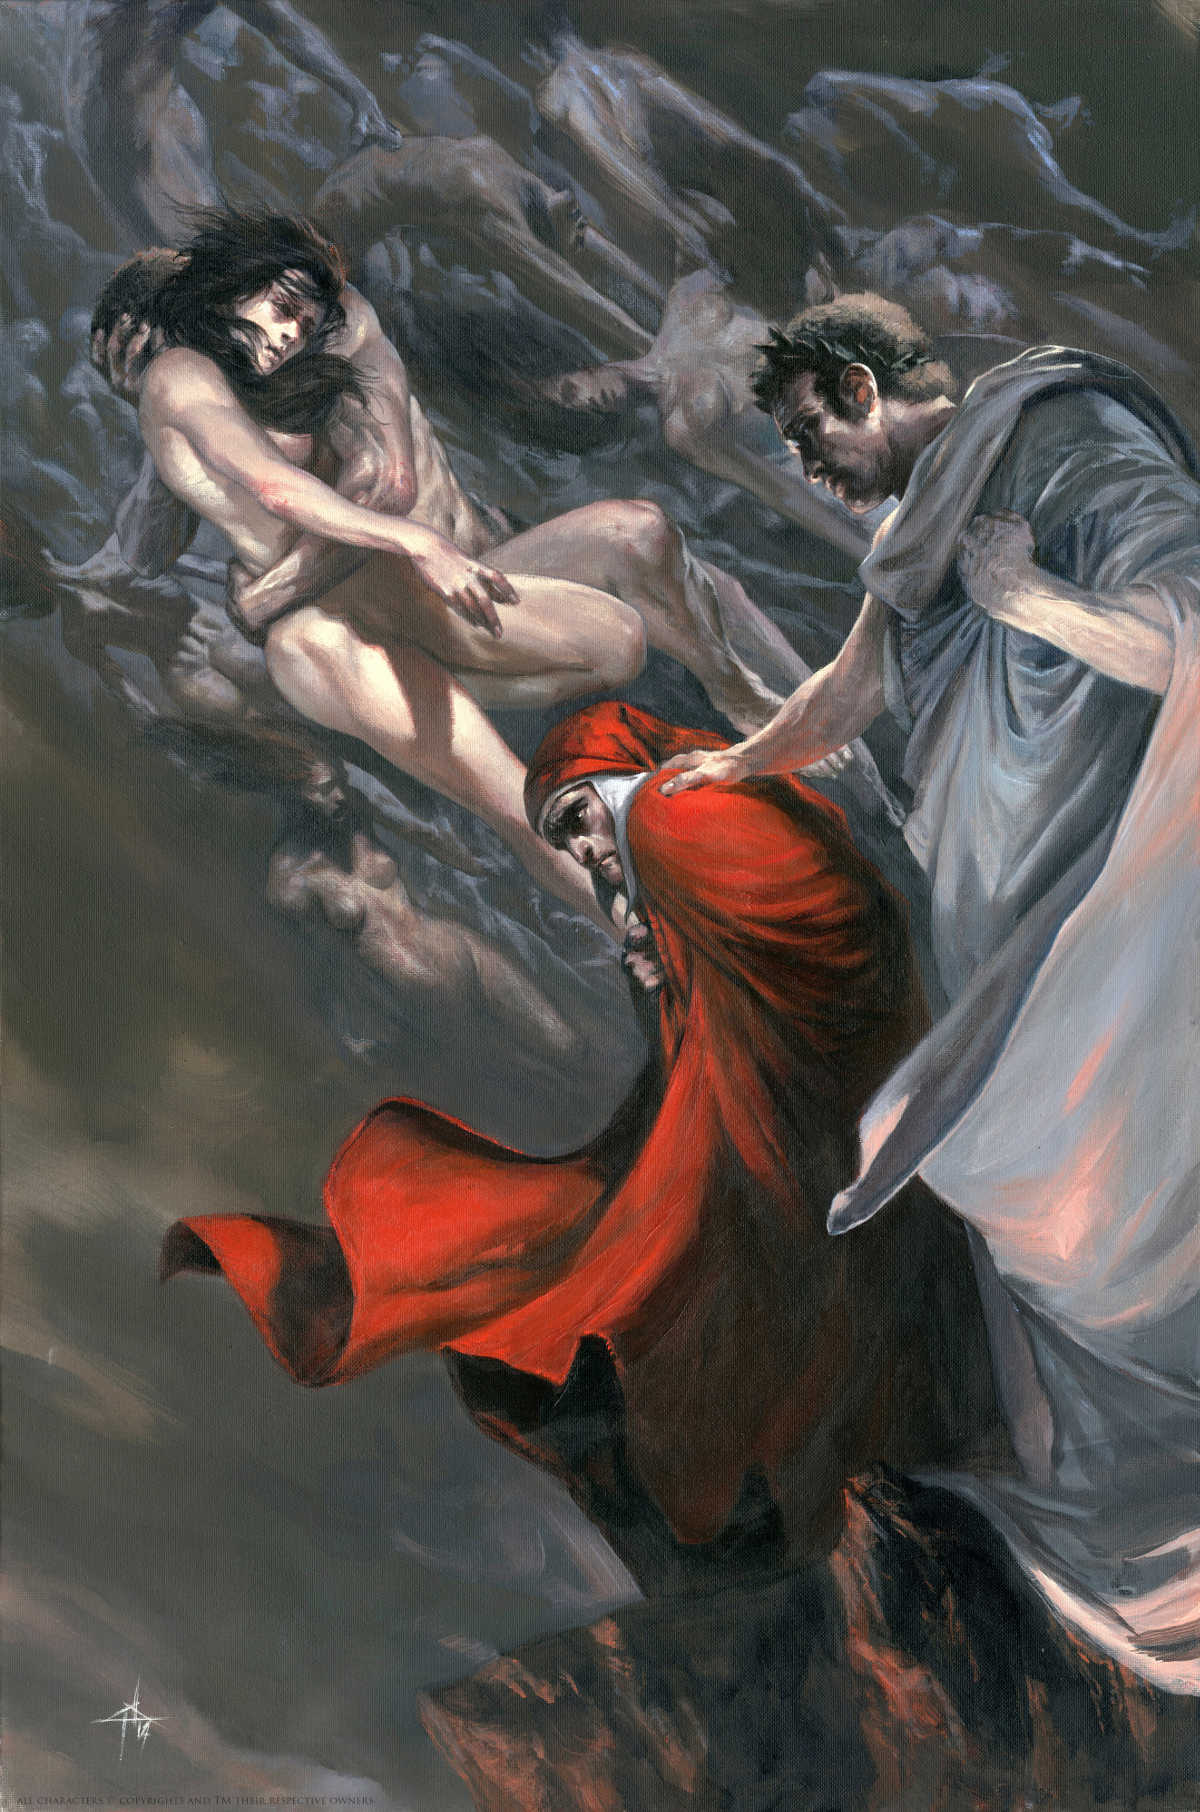 L'incontro fra Dante Alighieri e Paolo e Francesca all'Inferno nella Divina Commedia illustrato da Gabriele Dell'Otto